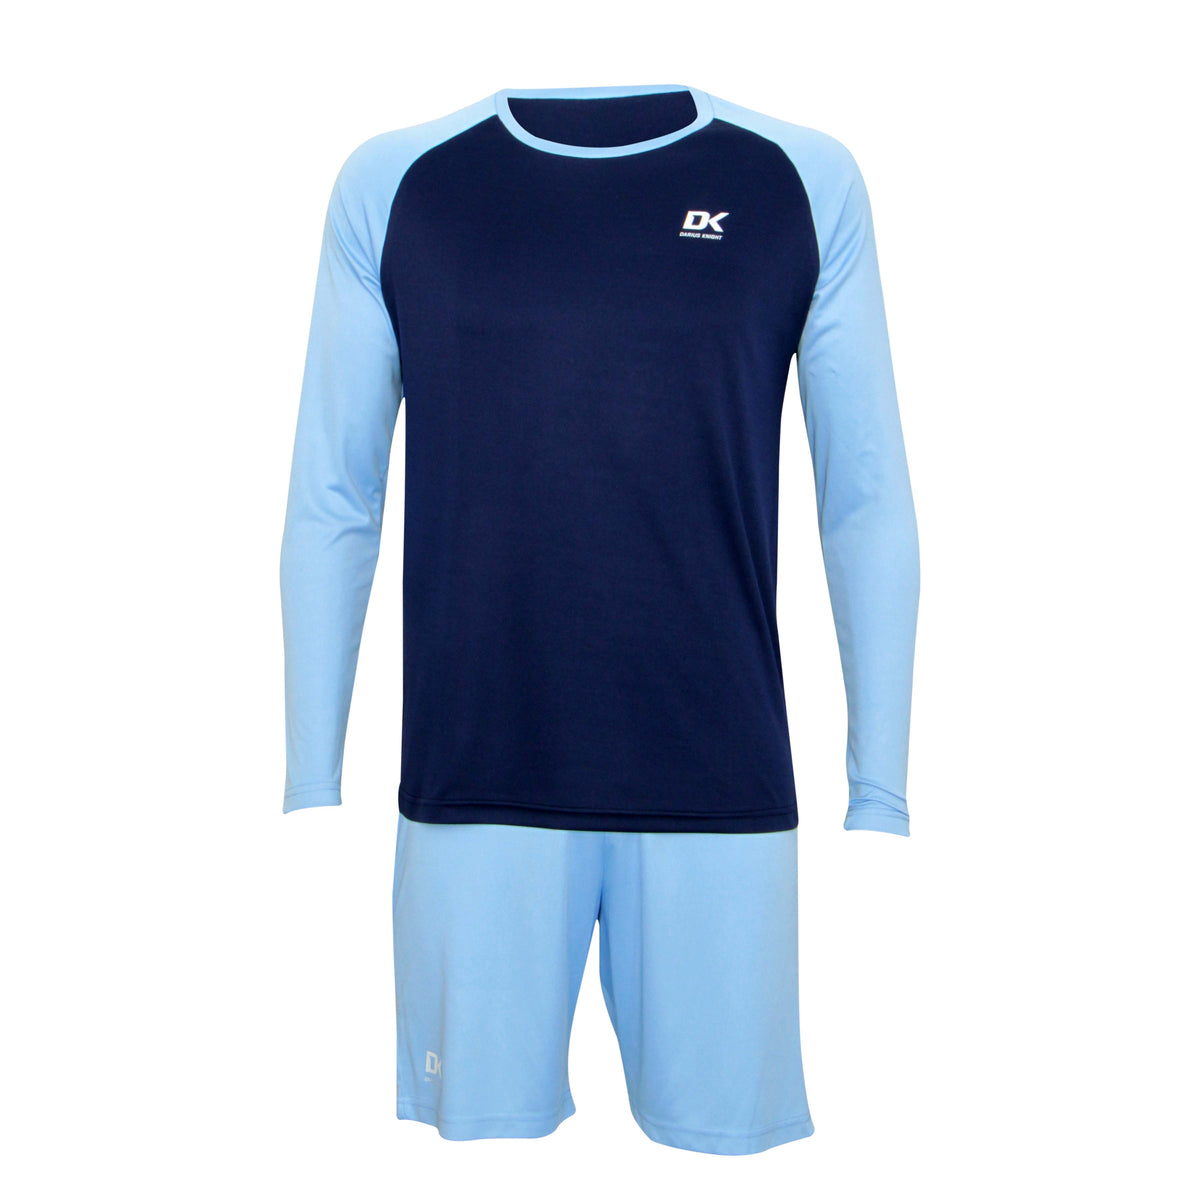 DK Basic Training Shirt (Light Blue/Dark Blue) - DK Sports